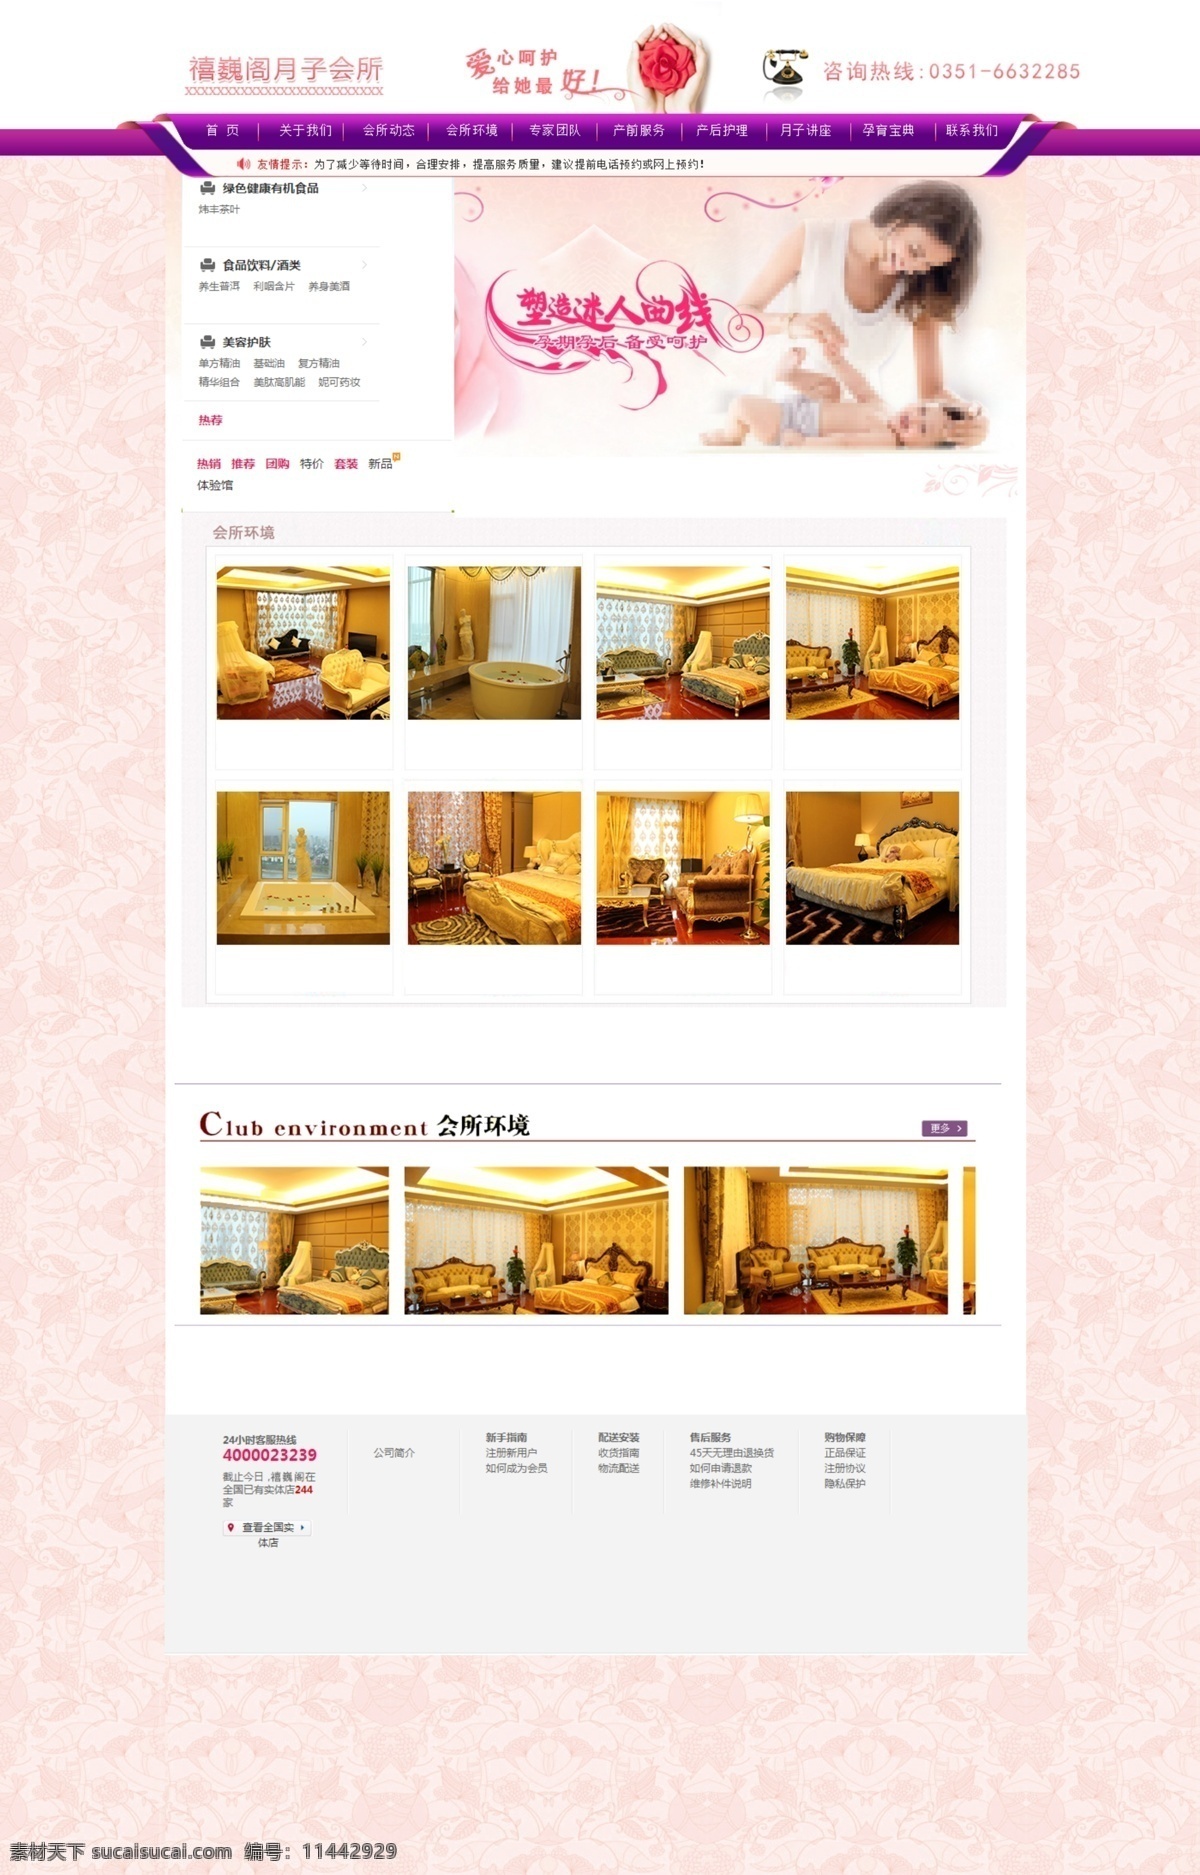 月子中心网站 月子中心 网站 首页 月子会所 月子网页设计 web 界面设计 中文模板 白色